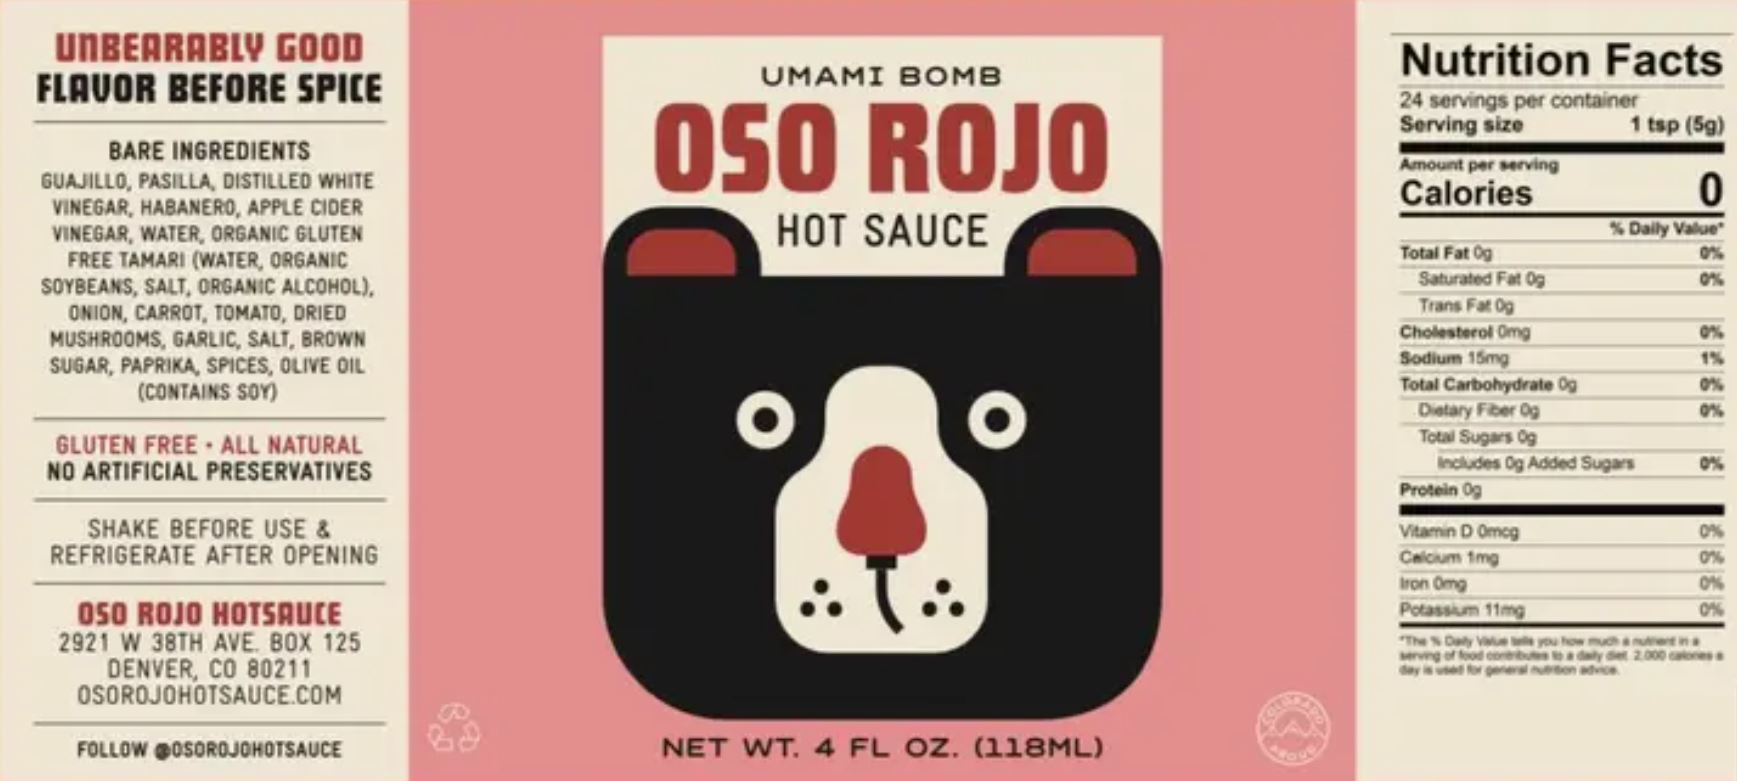 Umami Bomb Hot Sauce